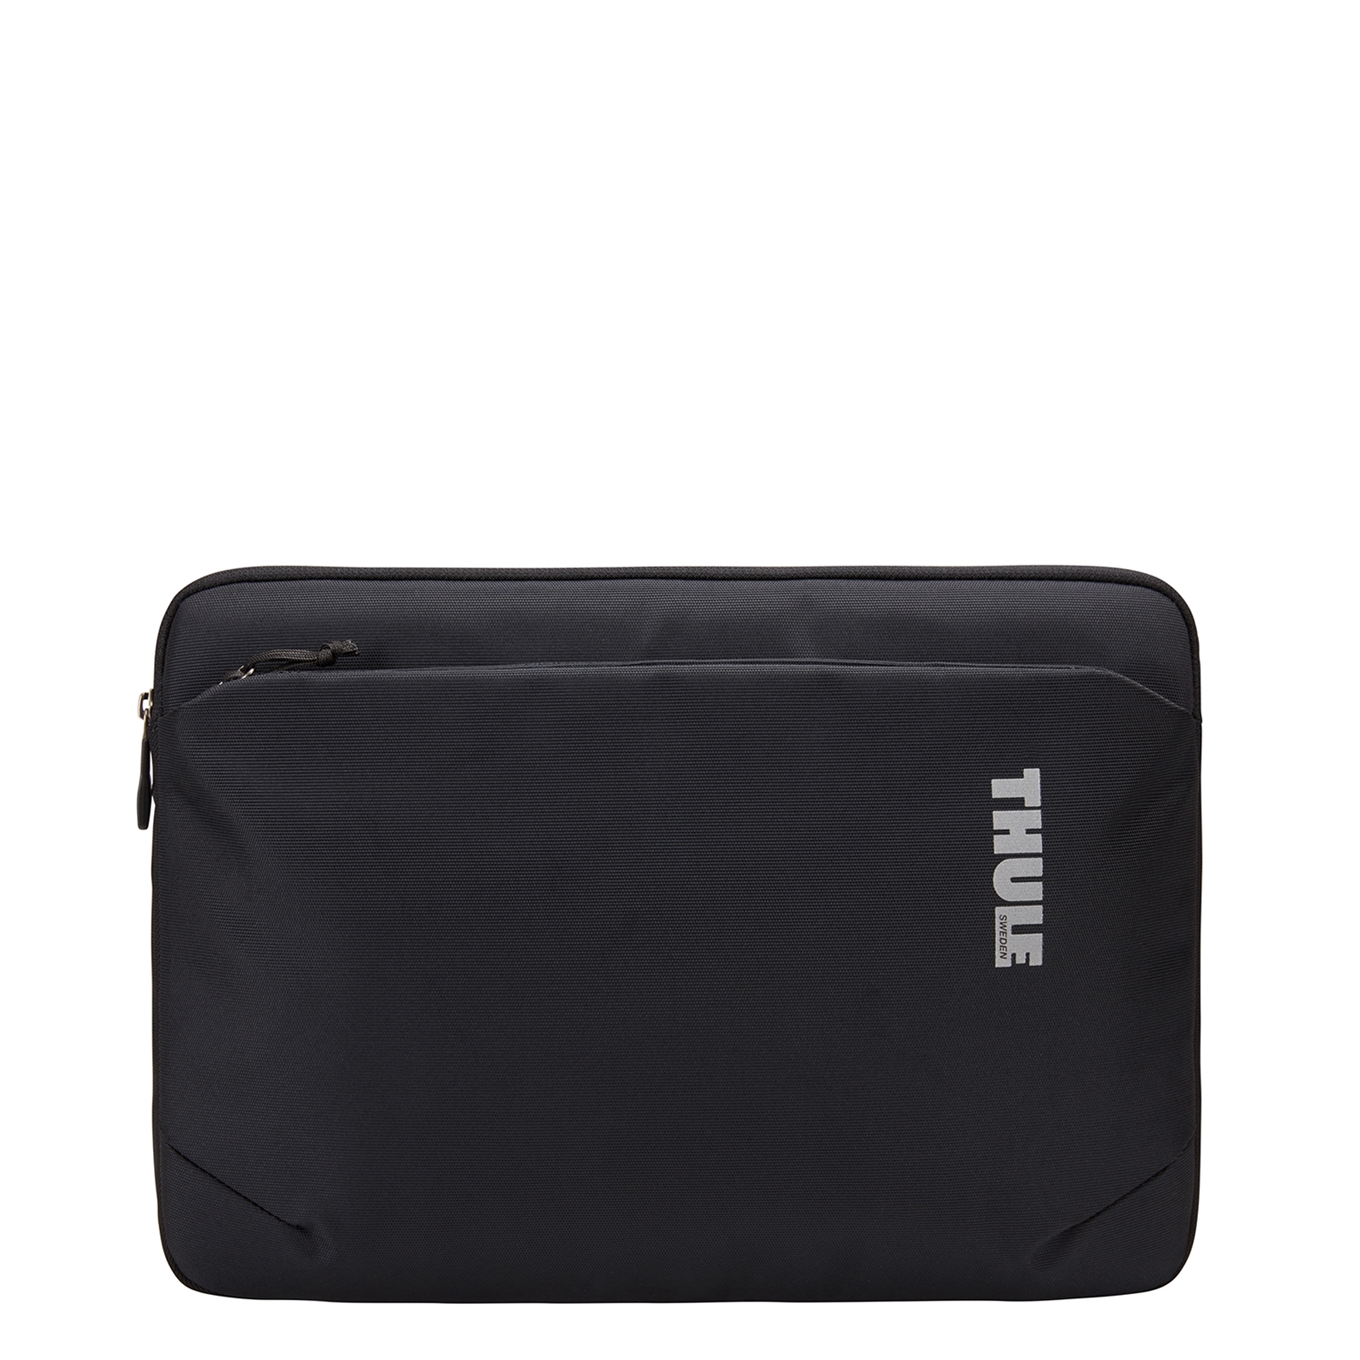 Thule Subterra MacBook Sleeve 15 inch black Laptopsleeve